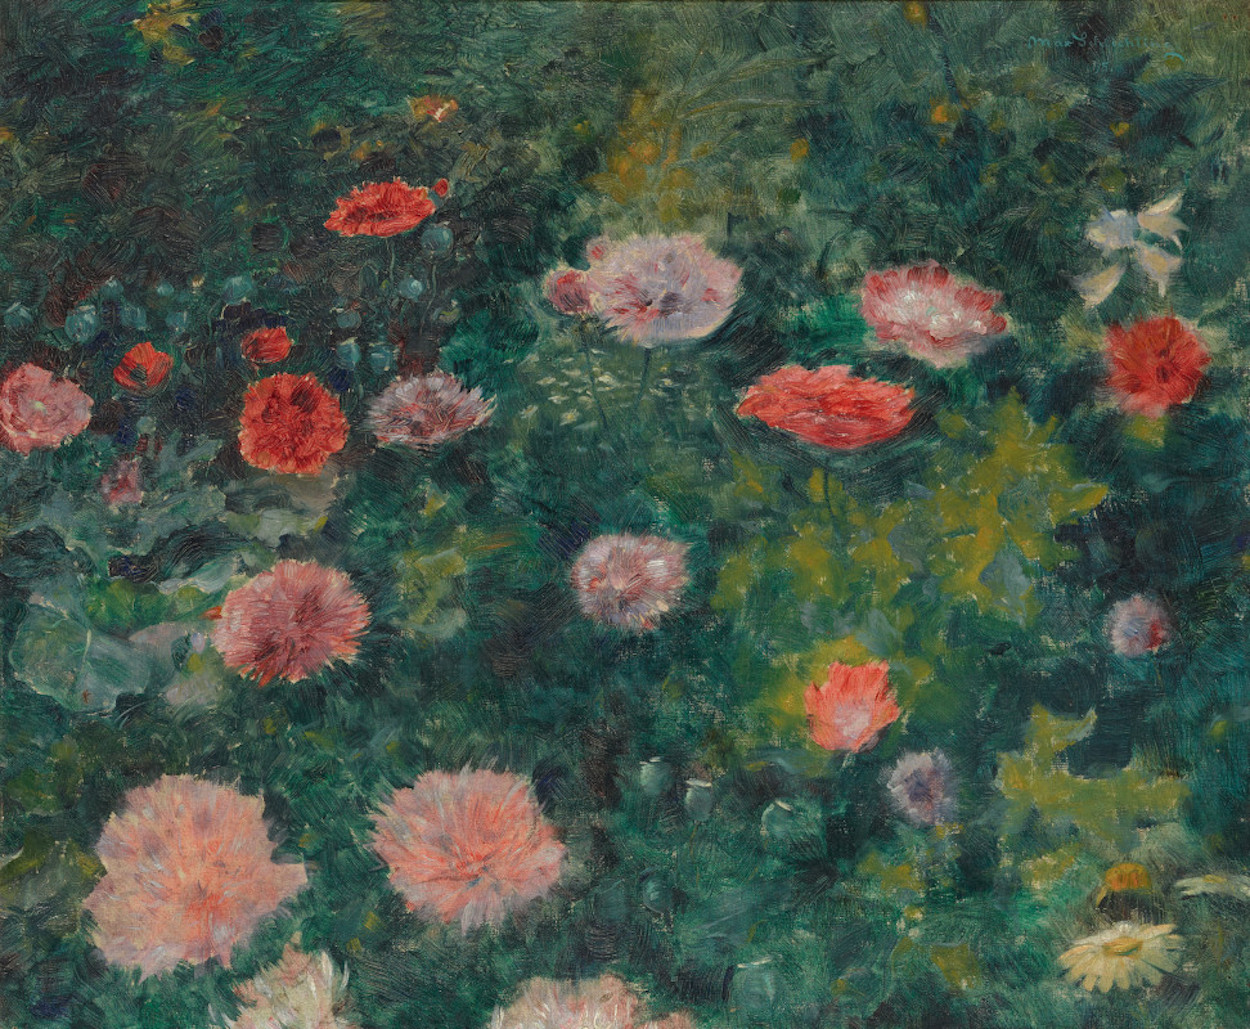 Flor de amapola by Max Schlichting - 1895 - 48 x 57 cm Antigua Galería Nacional de Berlín